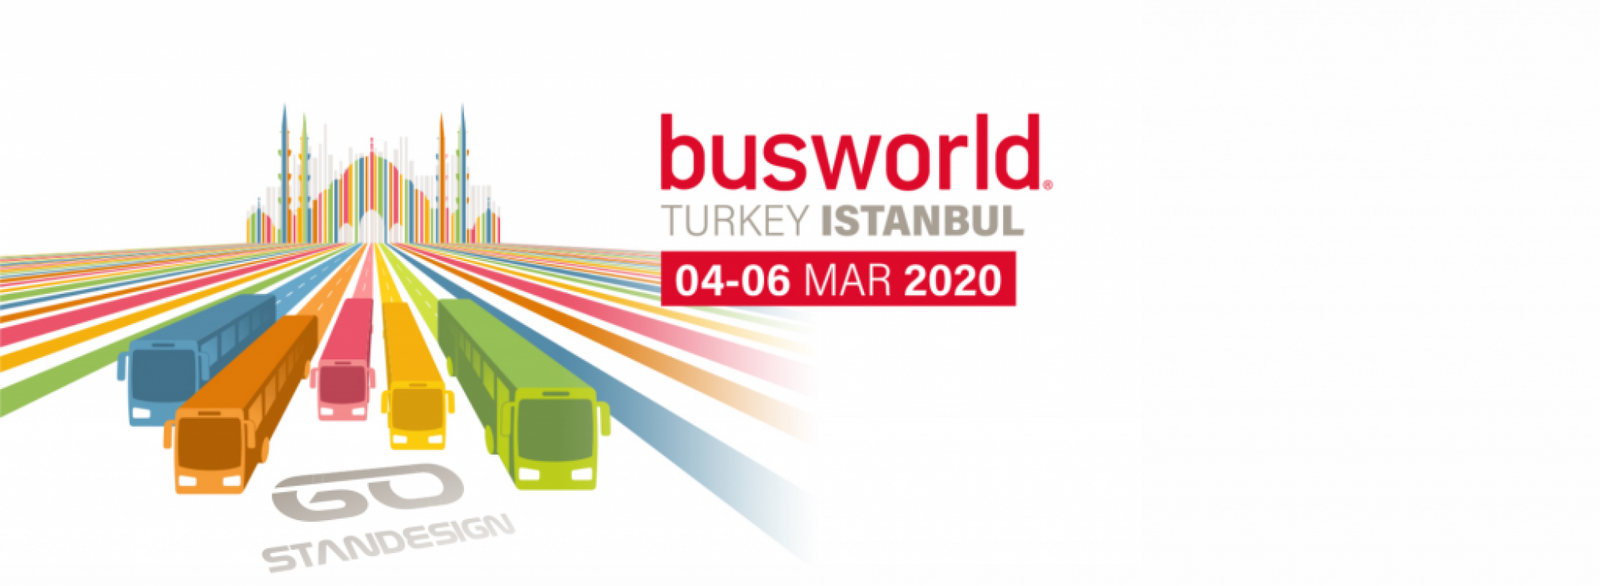 Fair Busworld Turkey